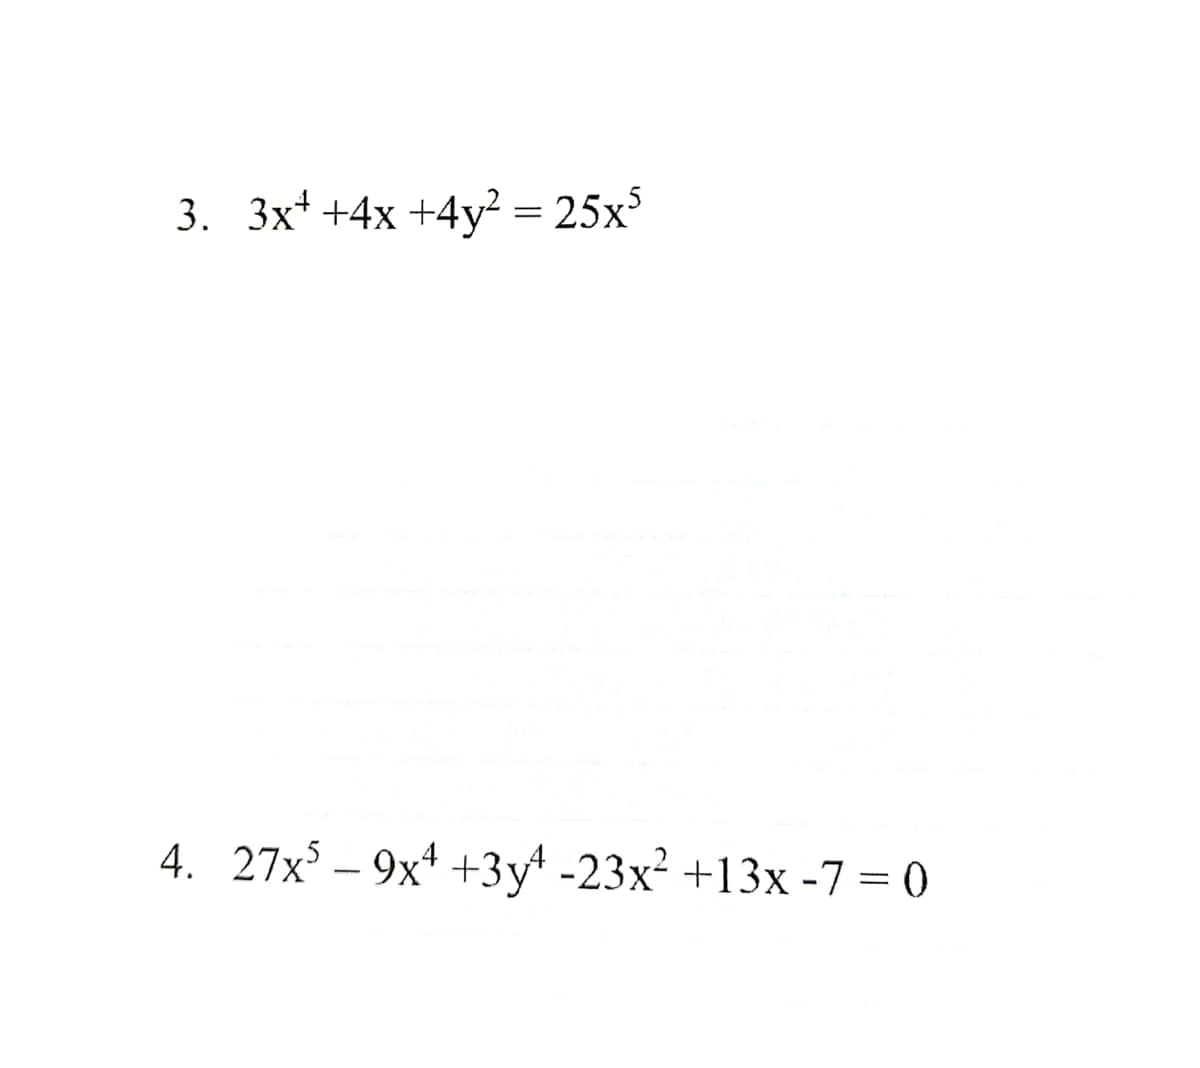 3. 3x¹ +4x +4y² = 25x³
4. 27x³ - 9x¹ +3y¹ -23x² +13x -7 = 0